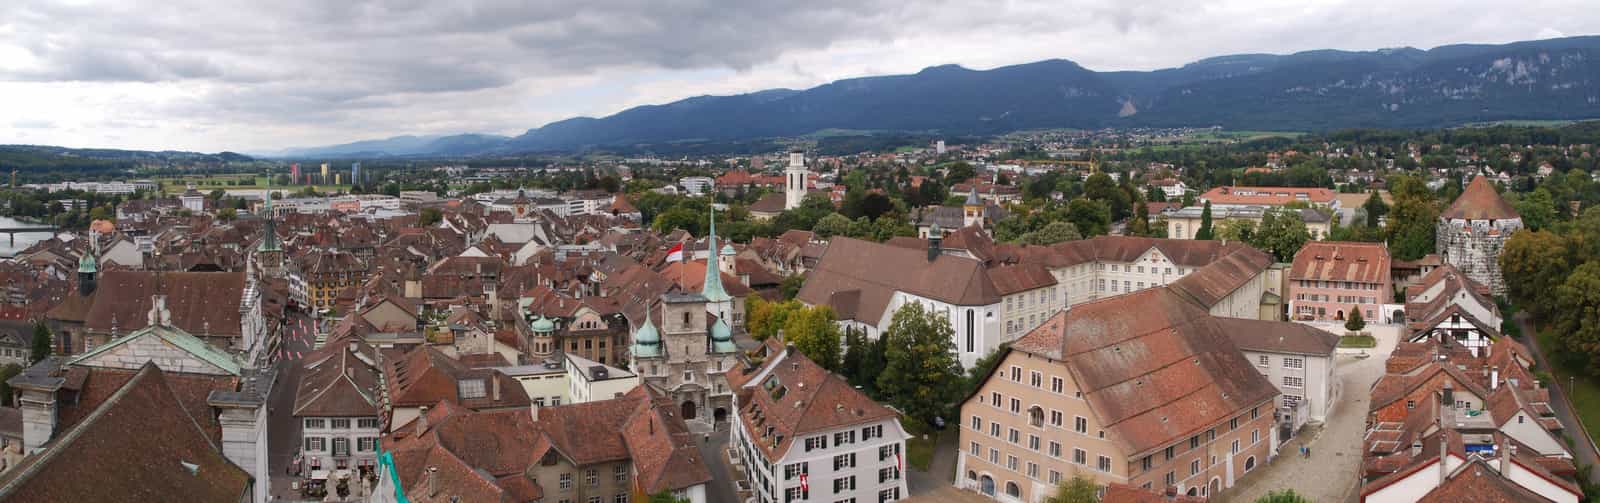 Panorama der Altstadt von Solothurn